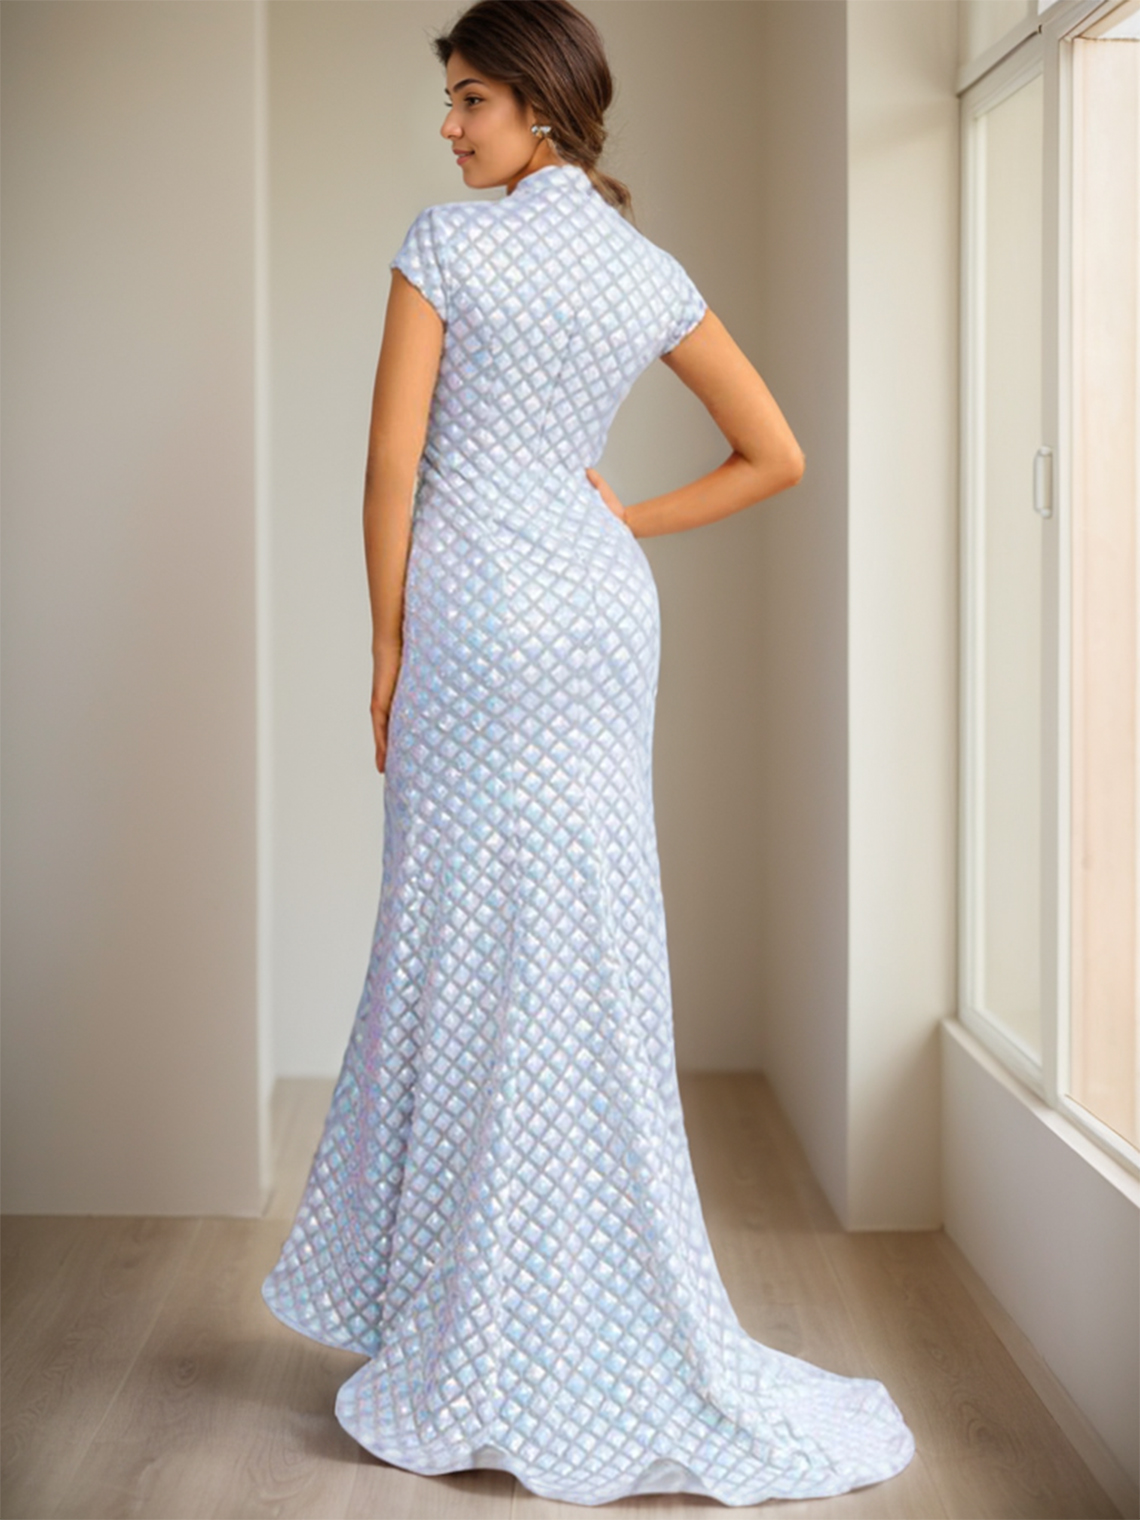 Mermaid/Trumpet Formal Evening Prom Dress Floor Length Short Sleeves 